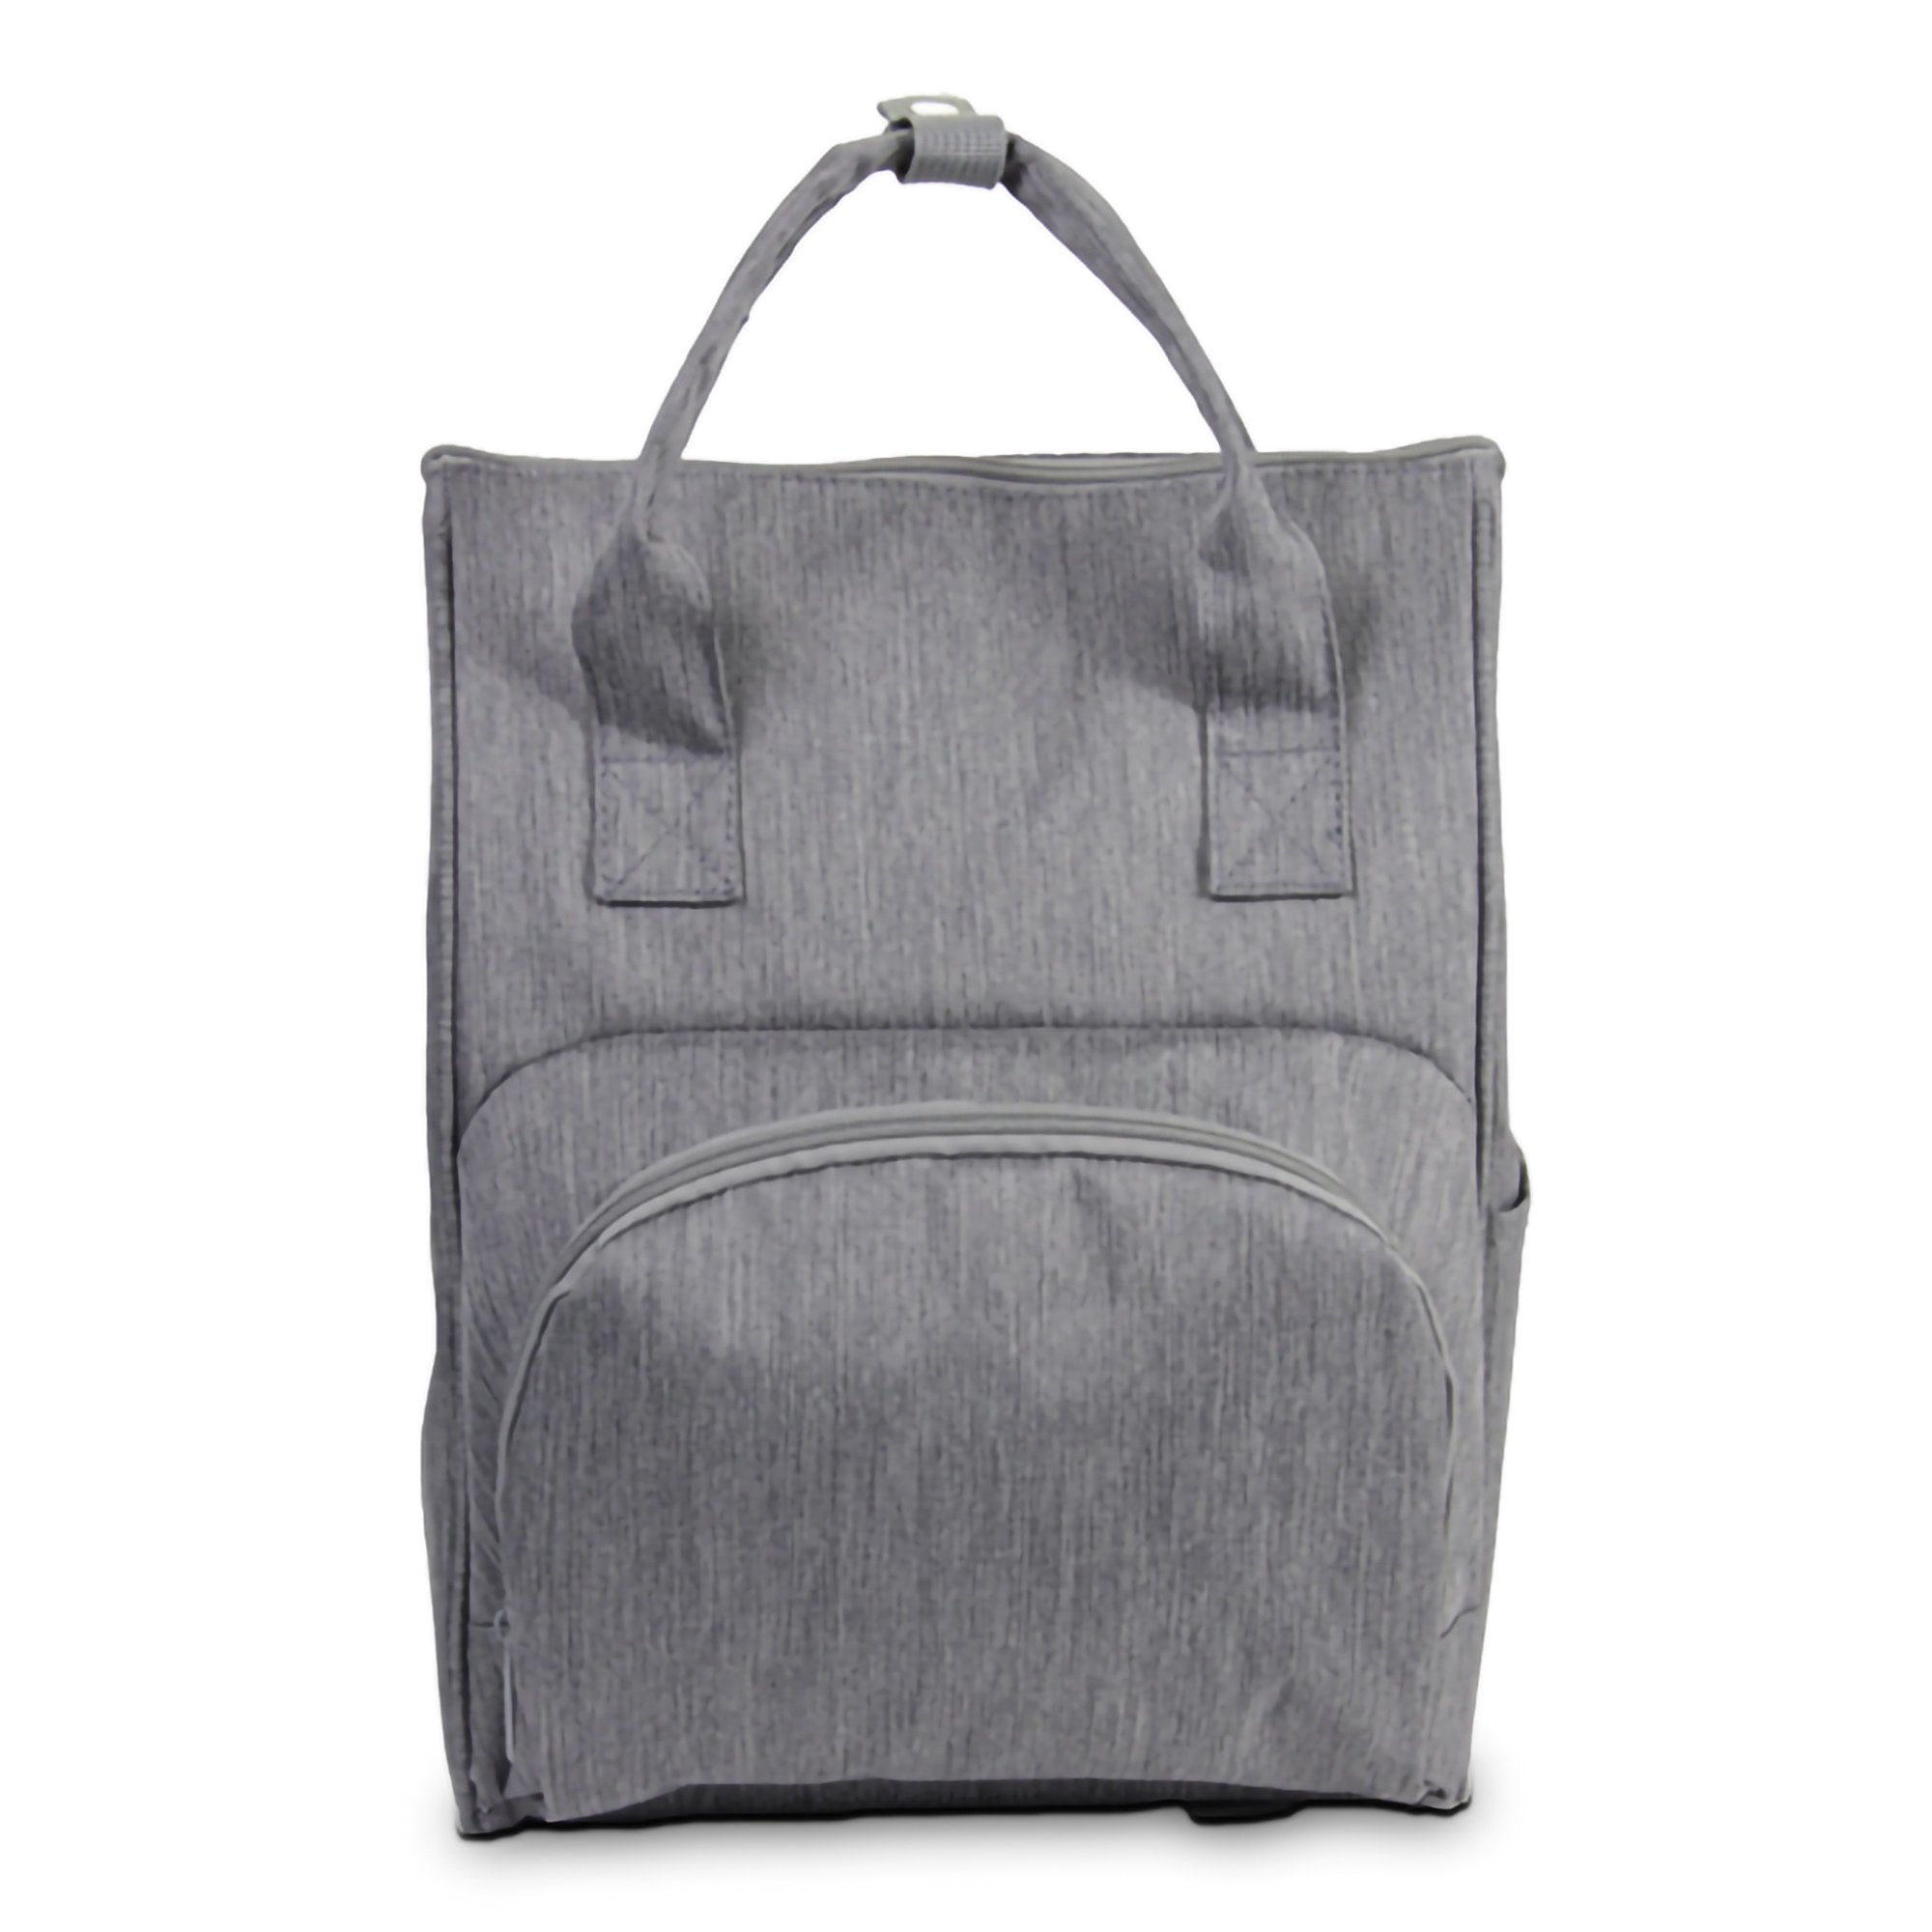 Infant Formula Backpack Kit Enfamil® Wonder Bag Unflavored 7.2 oz. Canister Powder (1 Unit)